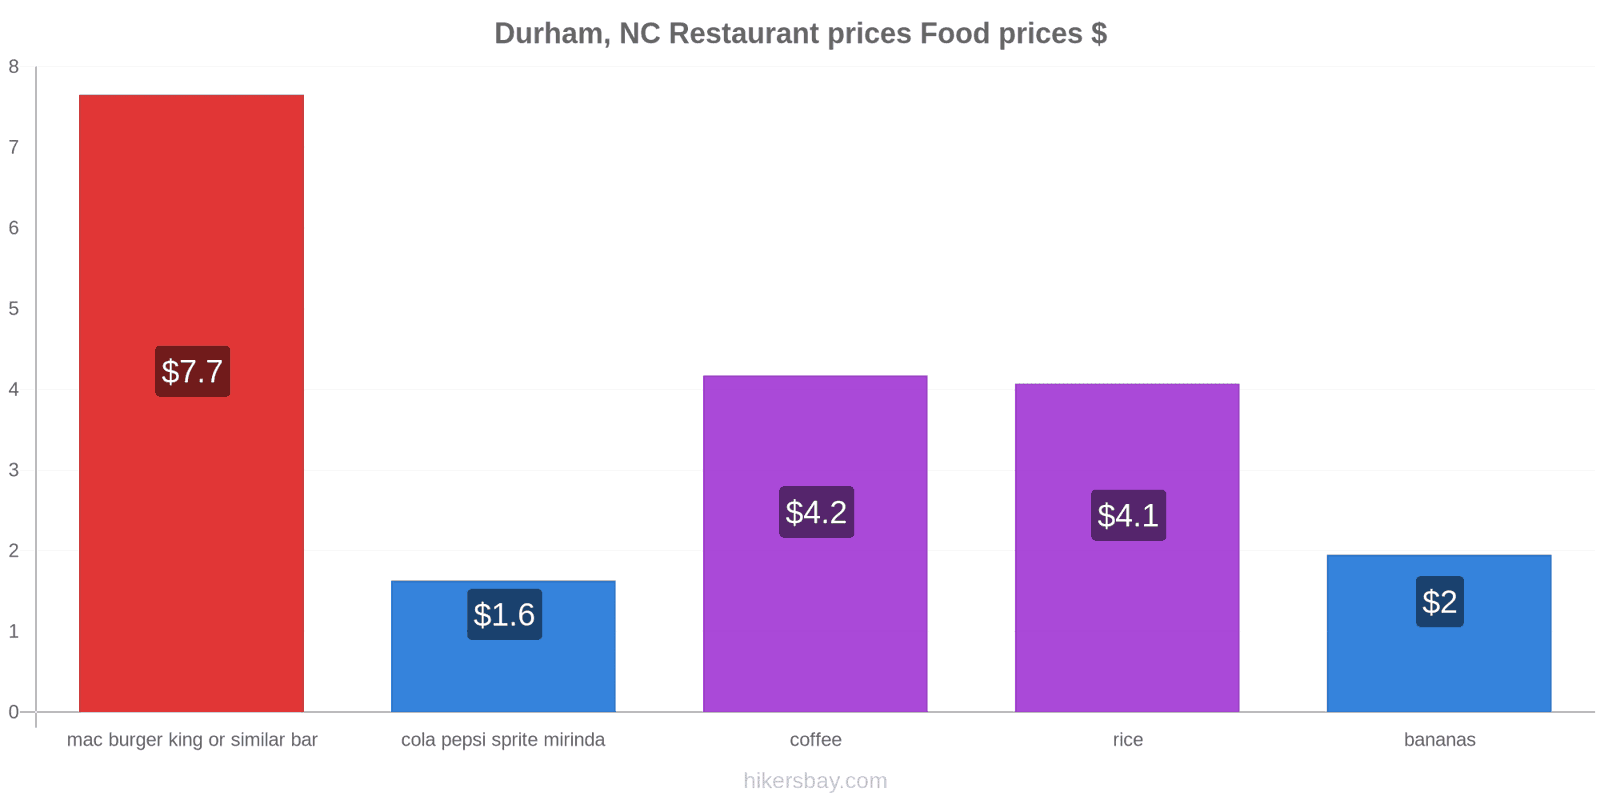 Durham, NC price changes hikersbay.com